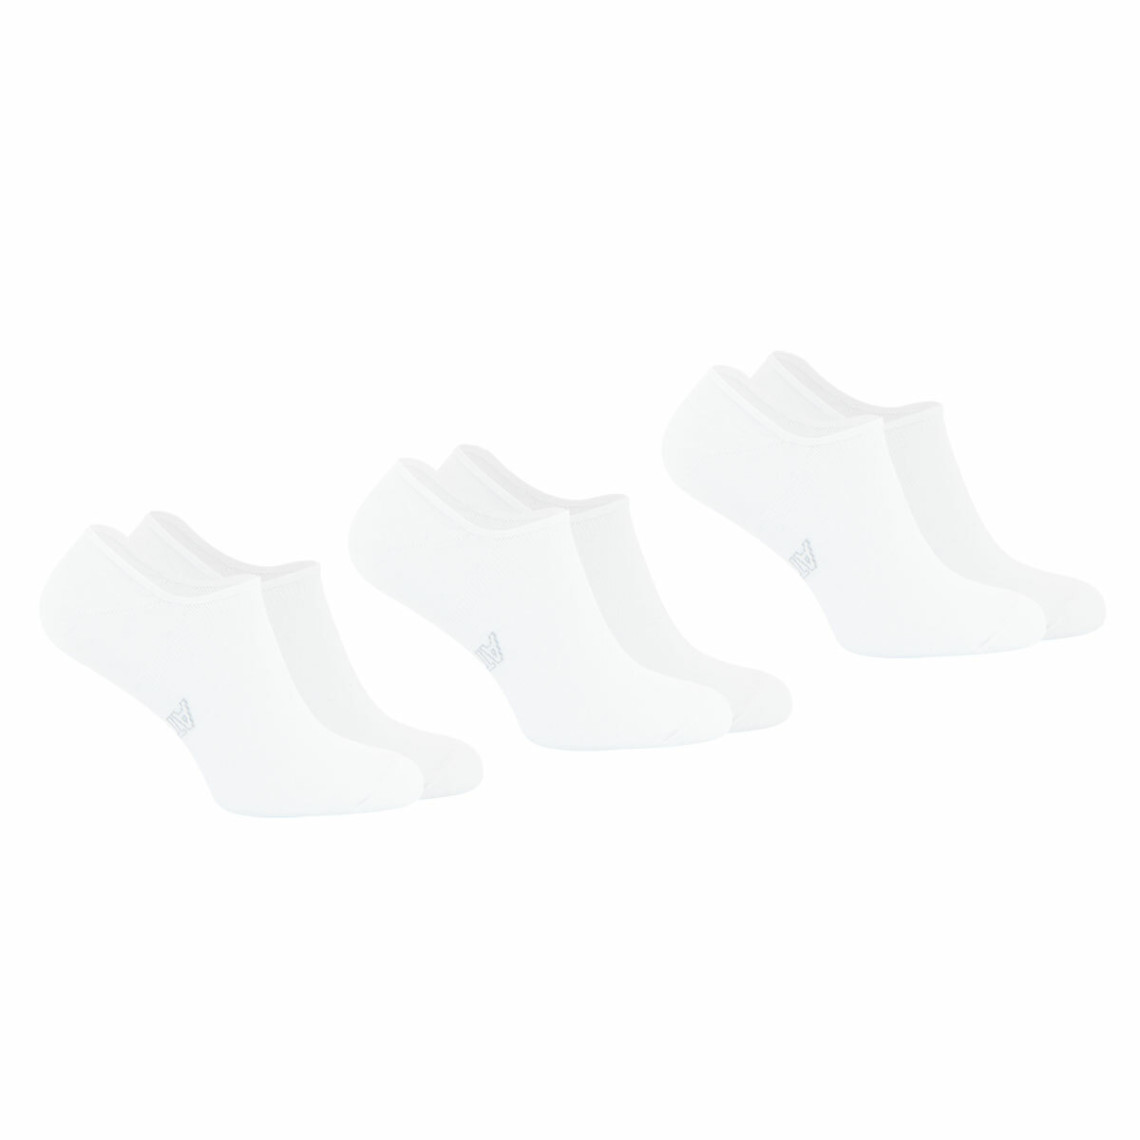 Lot de 3 paires de chaussettes invisibles - Blanc en coton